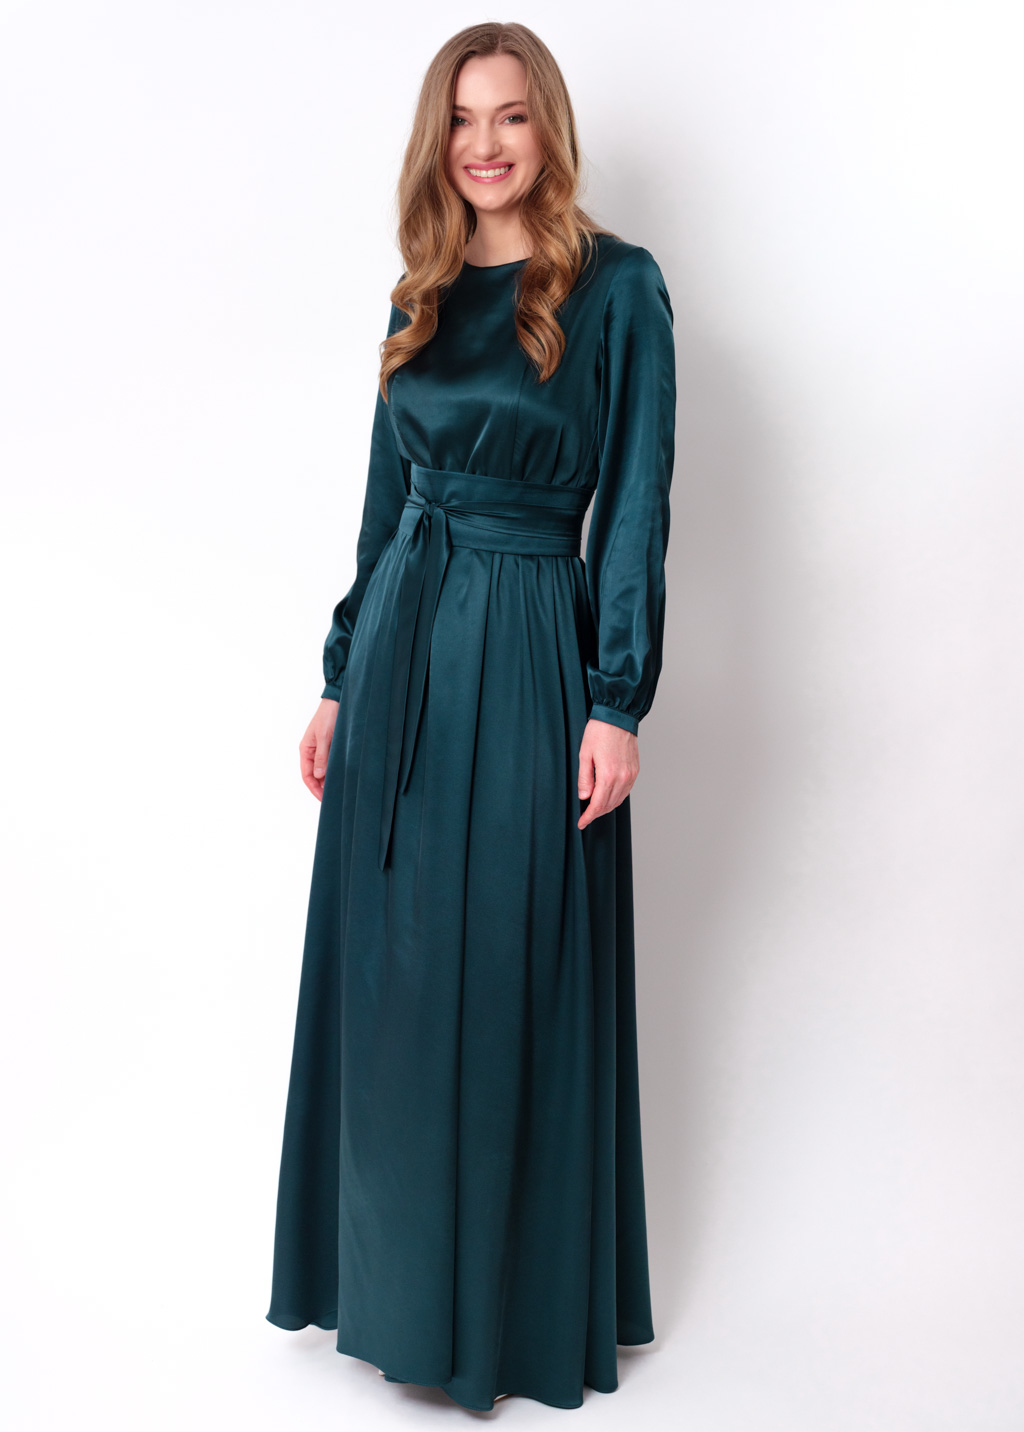 Dark teal green silk dress with belt, long slit dress, bridesmaid dress ...